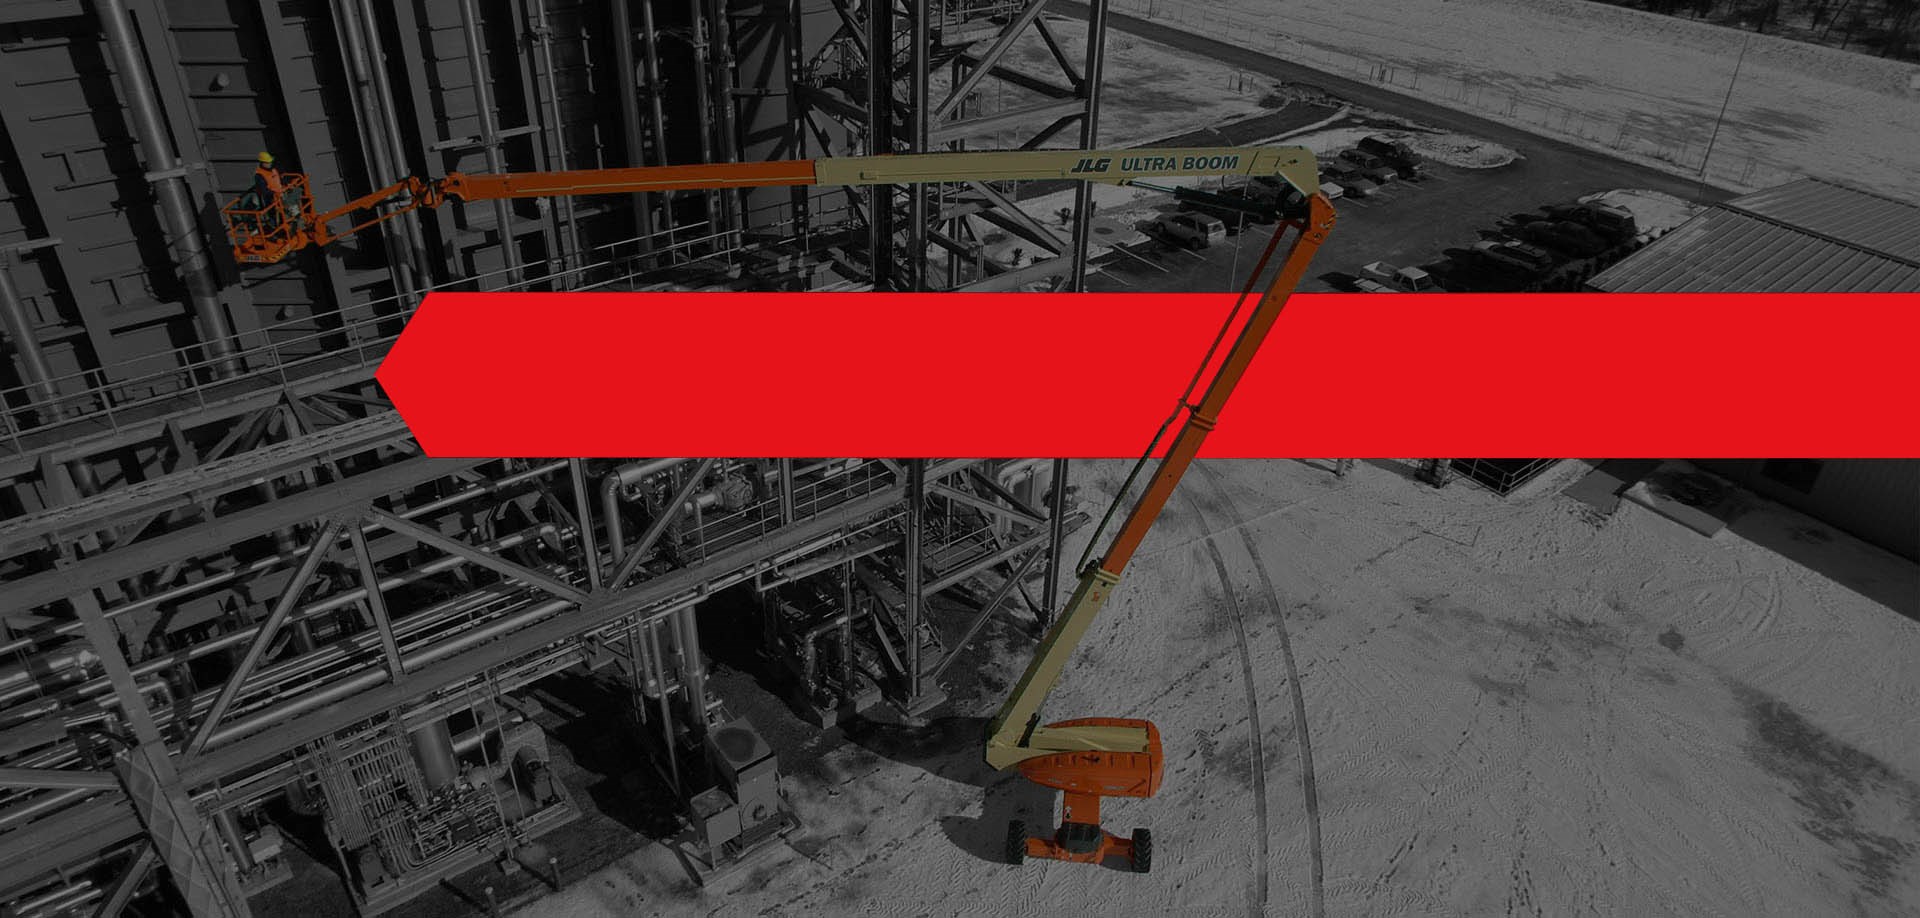 Pour garantir votre sécurité et celle de vos ouvriers, les échelles sont à proscrire à partir d’une certaine hauteur et à remplacer par des engins de chantier spécifiques.